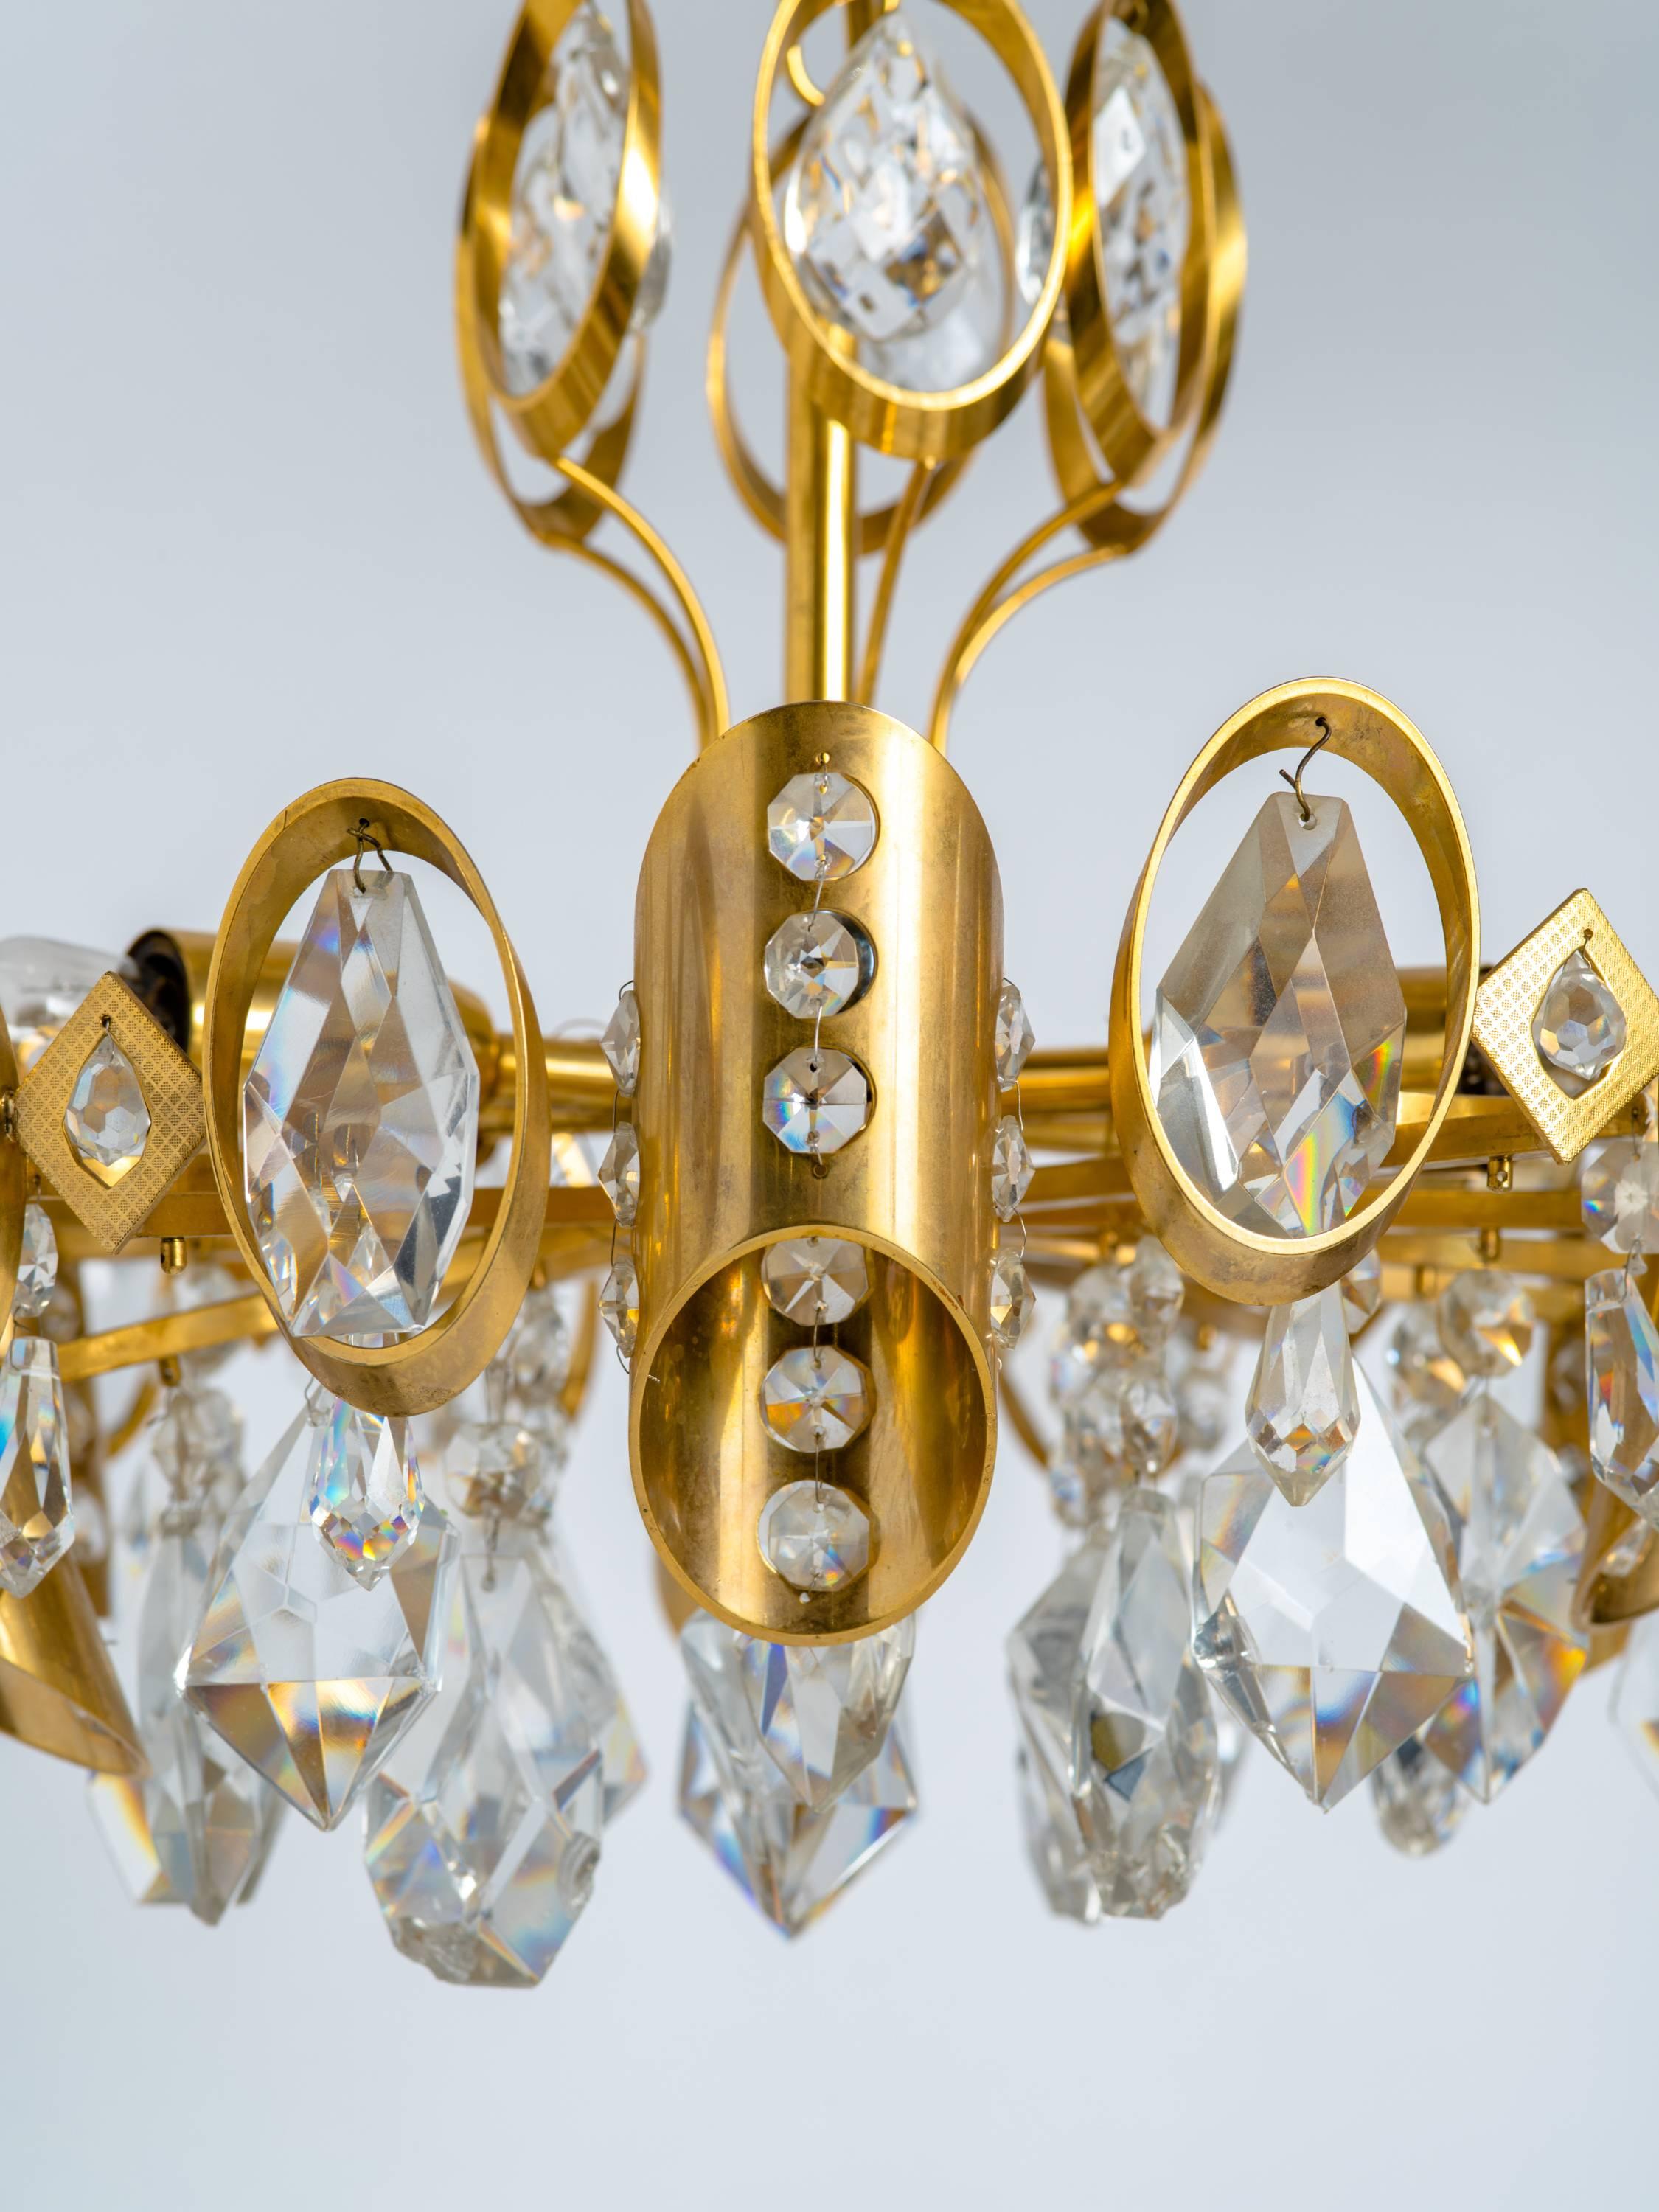 Atemberaubender Mid-Century Modern-Kronleuchter mit vergoldetem Messingrahmen und geschliffenen Kristallanhängern. Mehrstöckiges Design mit sechs radialen Lichtern und asymmetrischen Zylindern mit Perlenkristall-Akzenten.